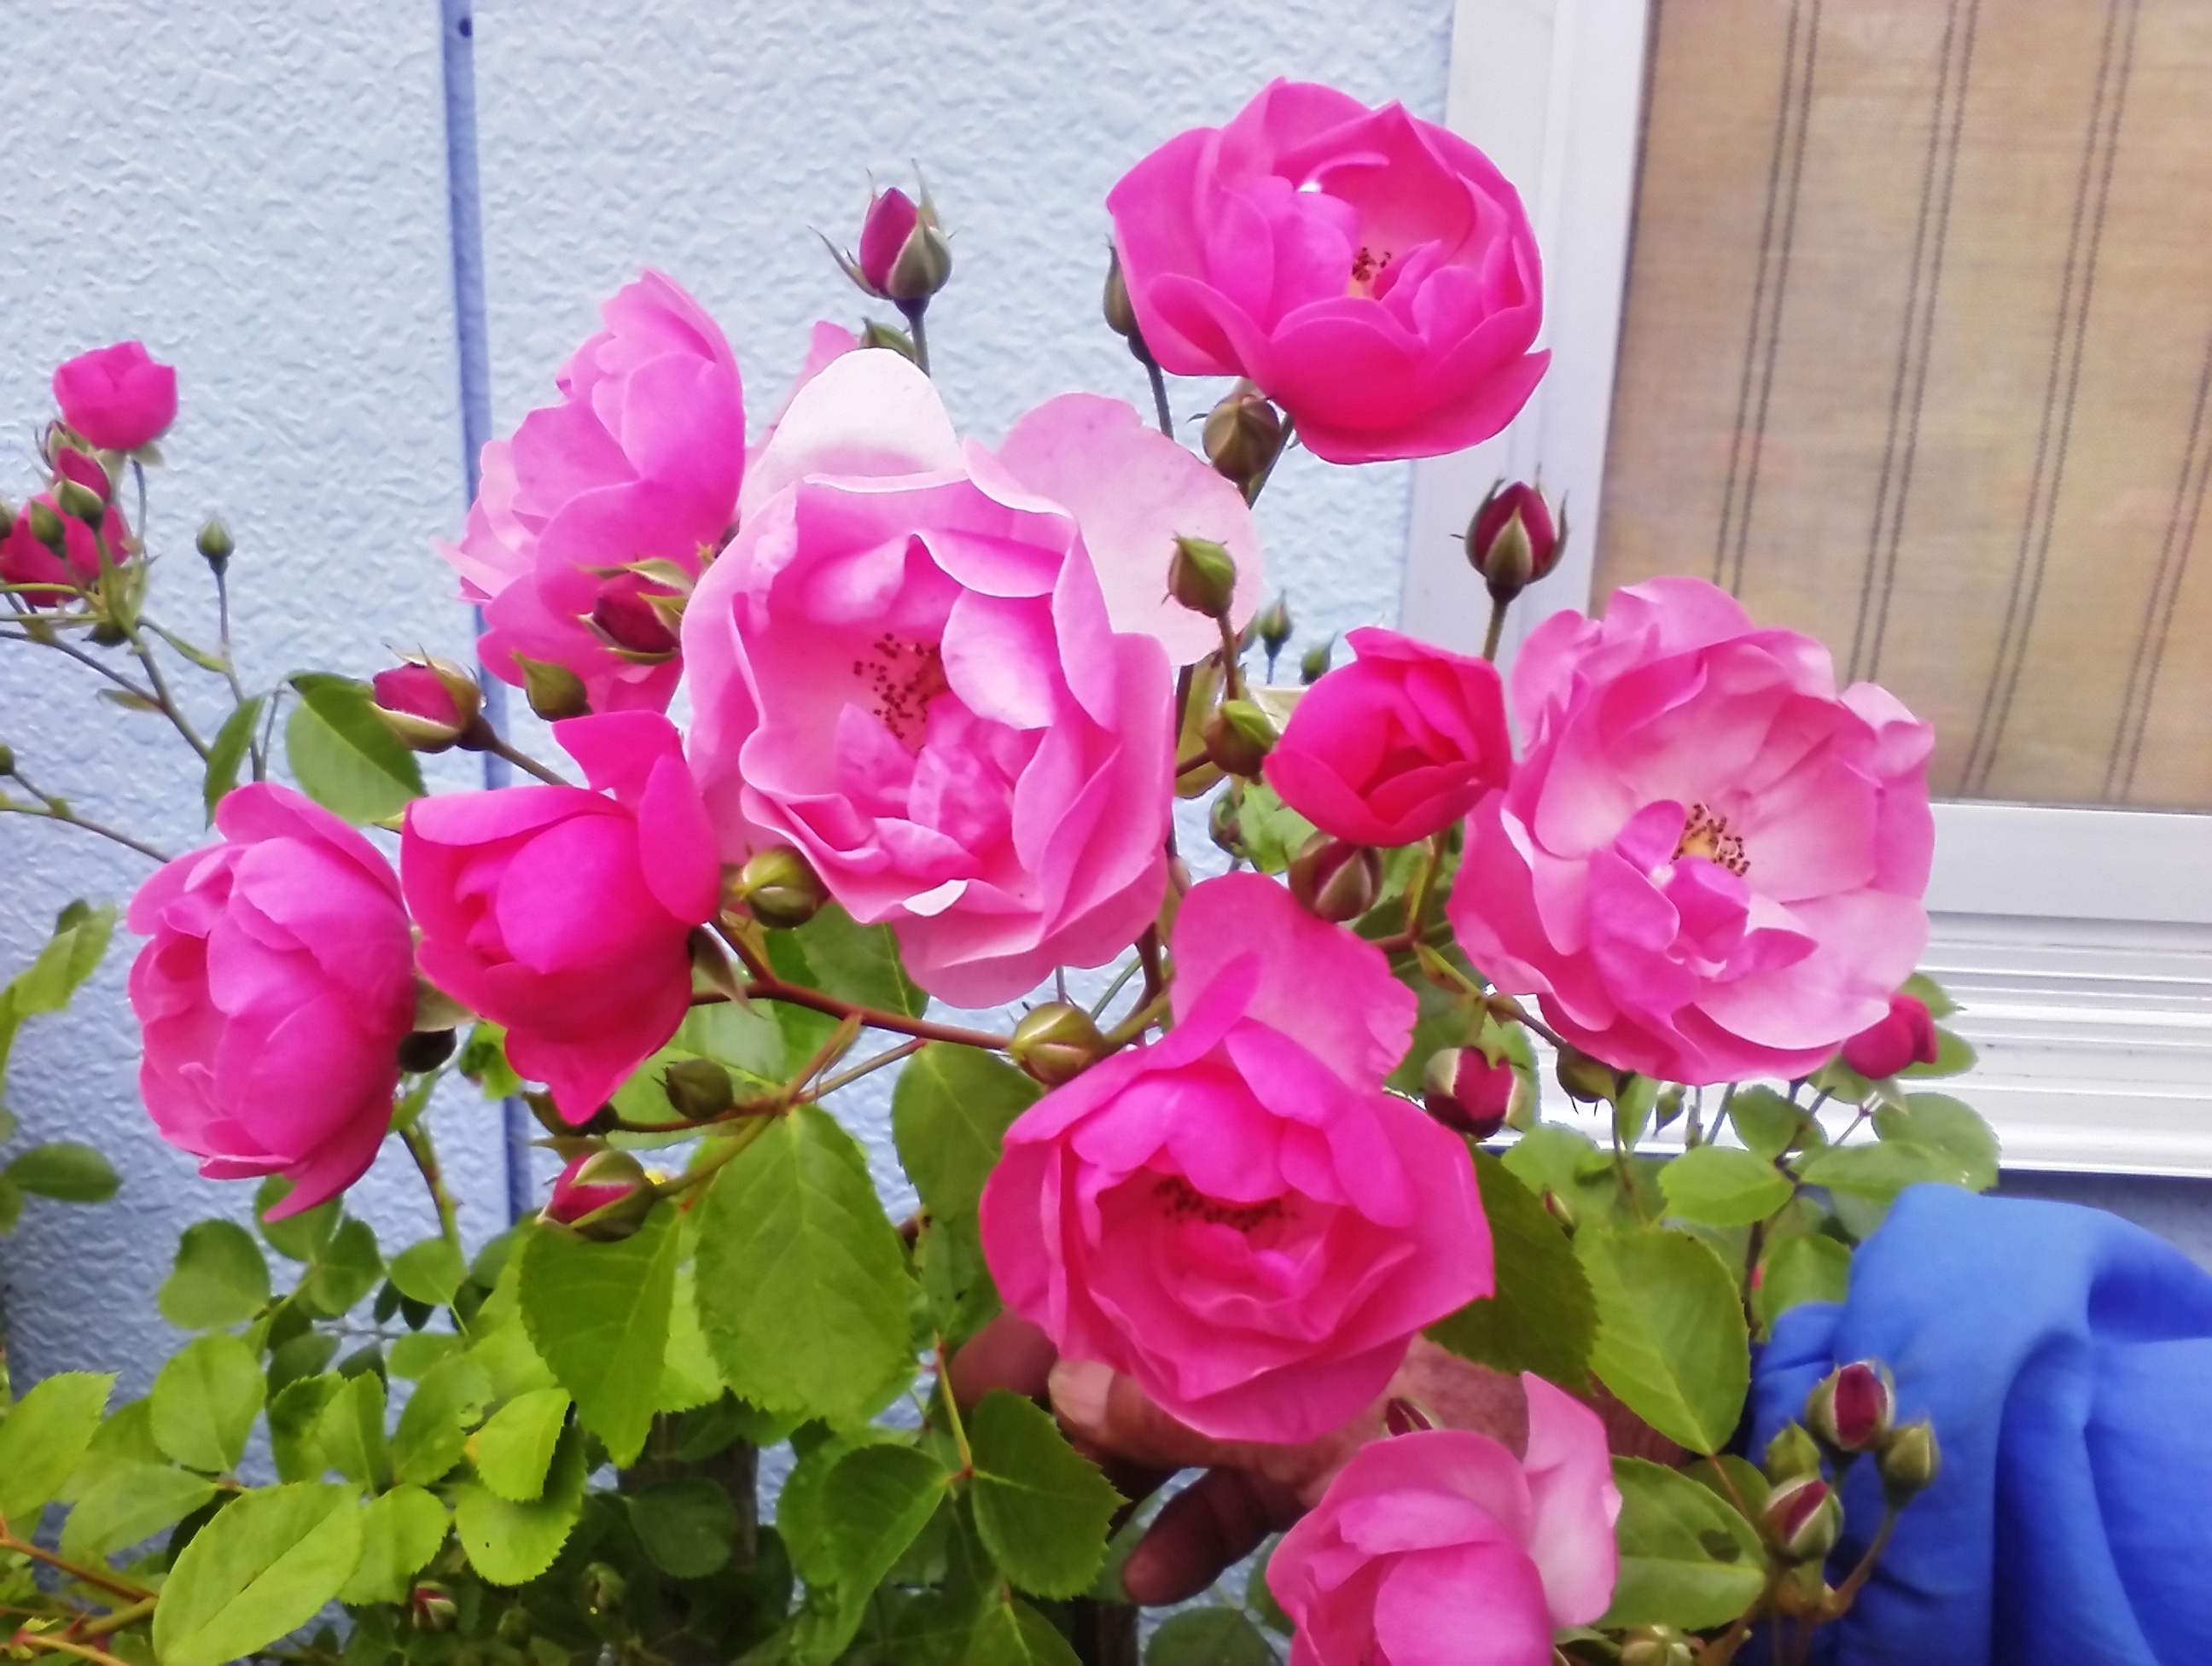 伊賀教室近くで育てているオーガニックの薔薇